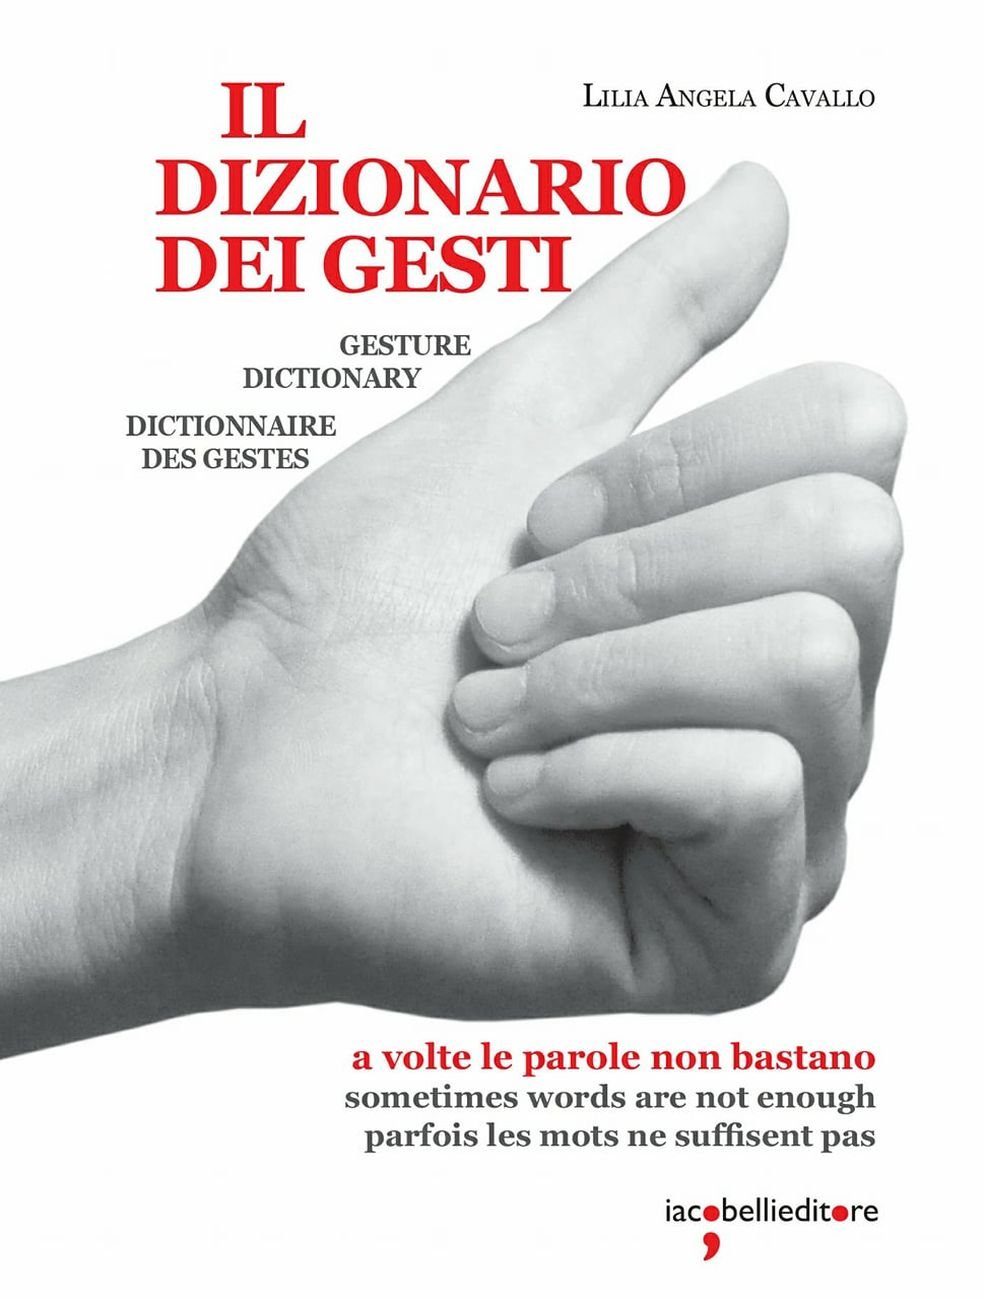 Lilia Angela Cavallo – Il Dizionario dei Gesti (Iacobelli Editore, Roma 2017)